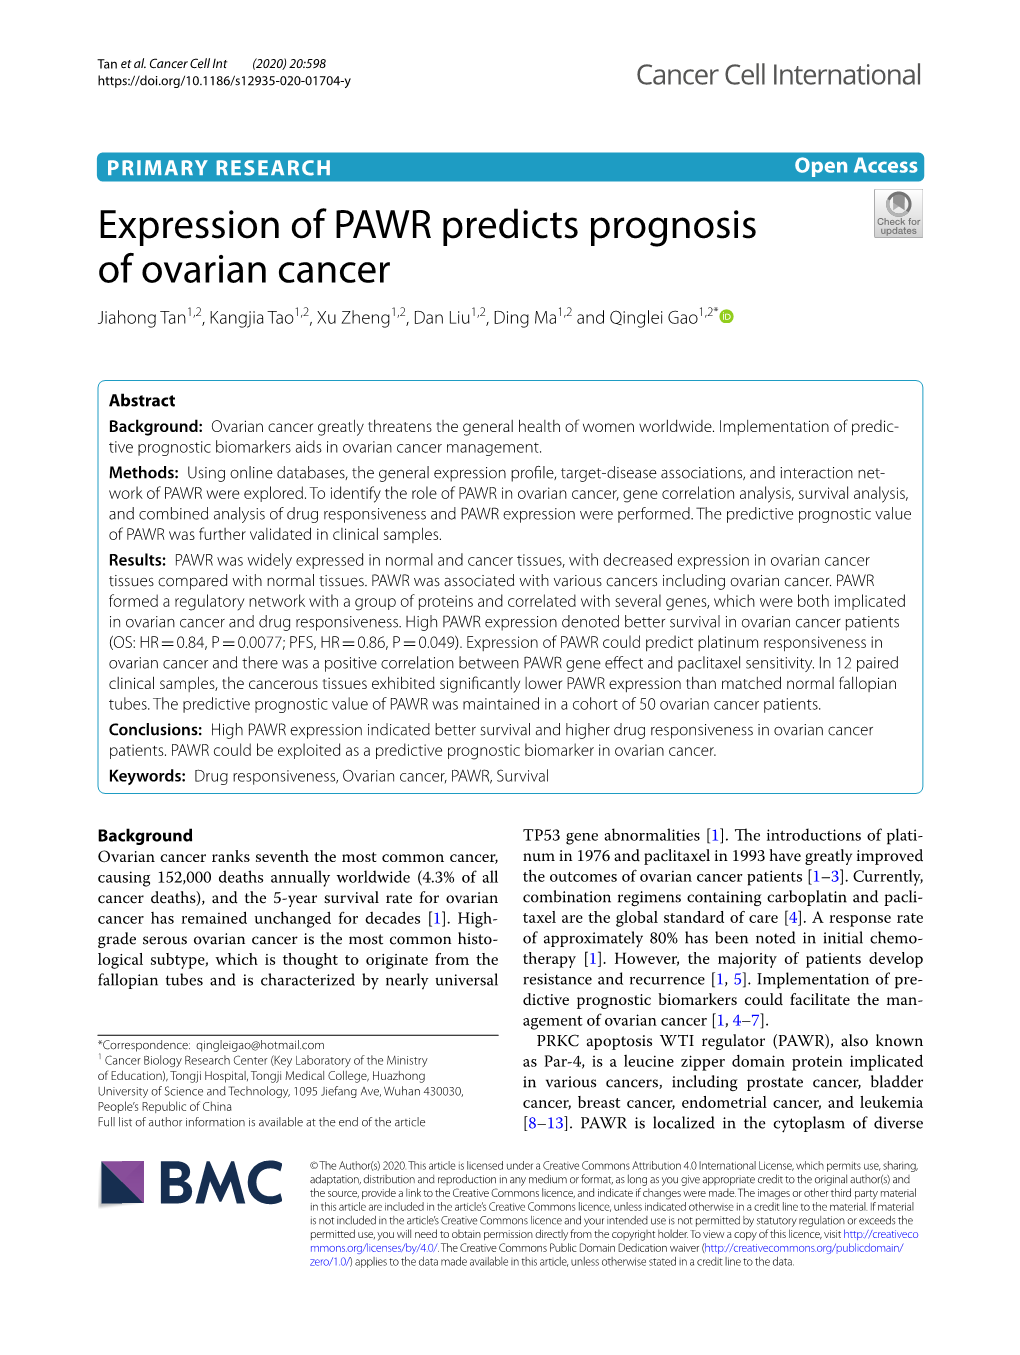 Expression of PAWR Predicts Prognosis of Ovarian Cancer Jiahong Tan1,2, Kangjia Tao1,2, Xu Zheng1,2, Dan Liu1,2, Ding Ma1,2 and Qinglei Gao1,2*